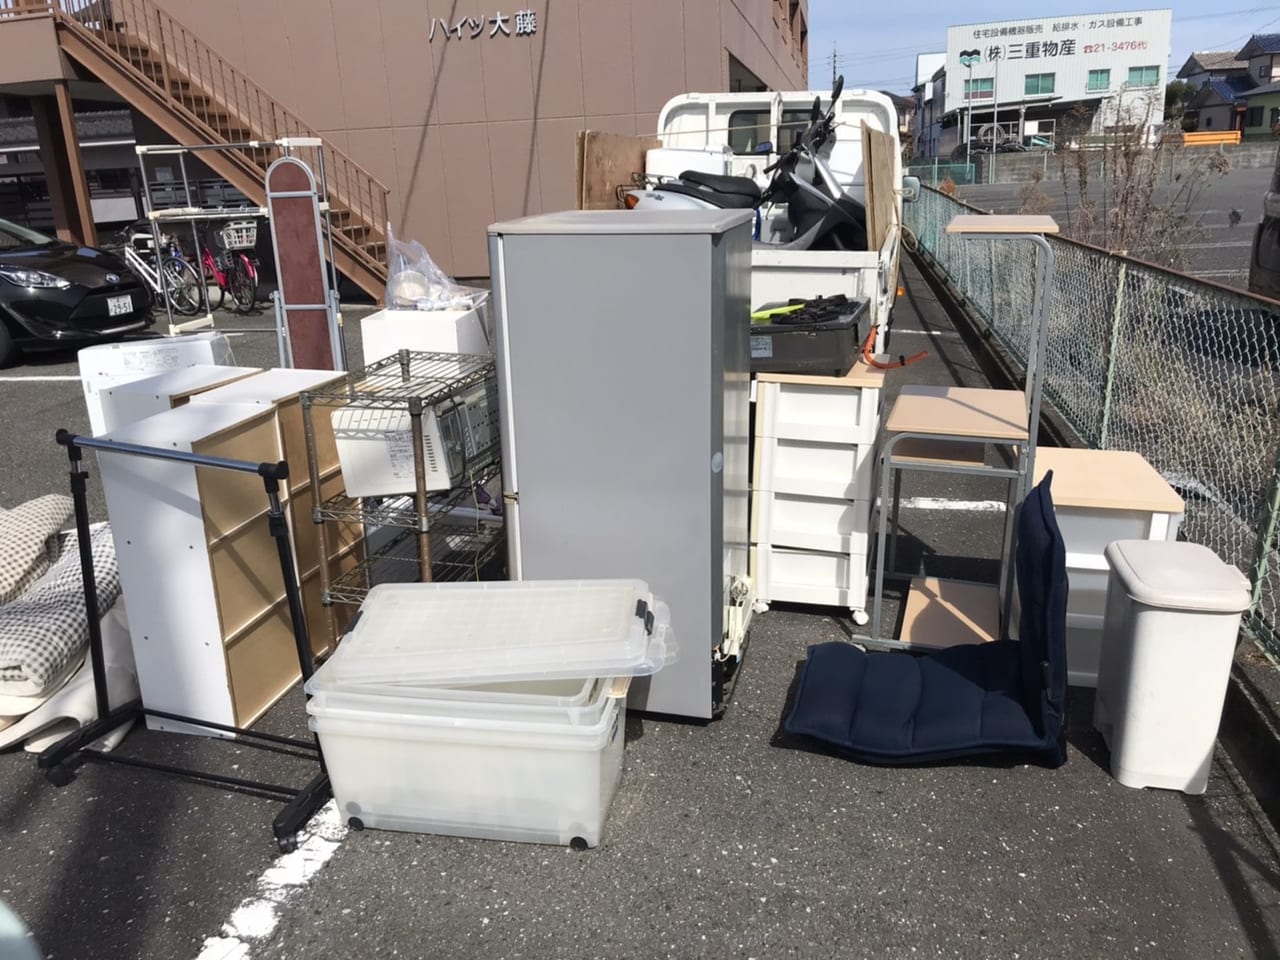 香川県高松市周辺のS様不用品回収前画像